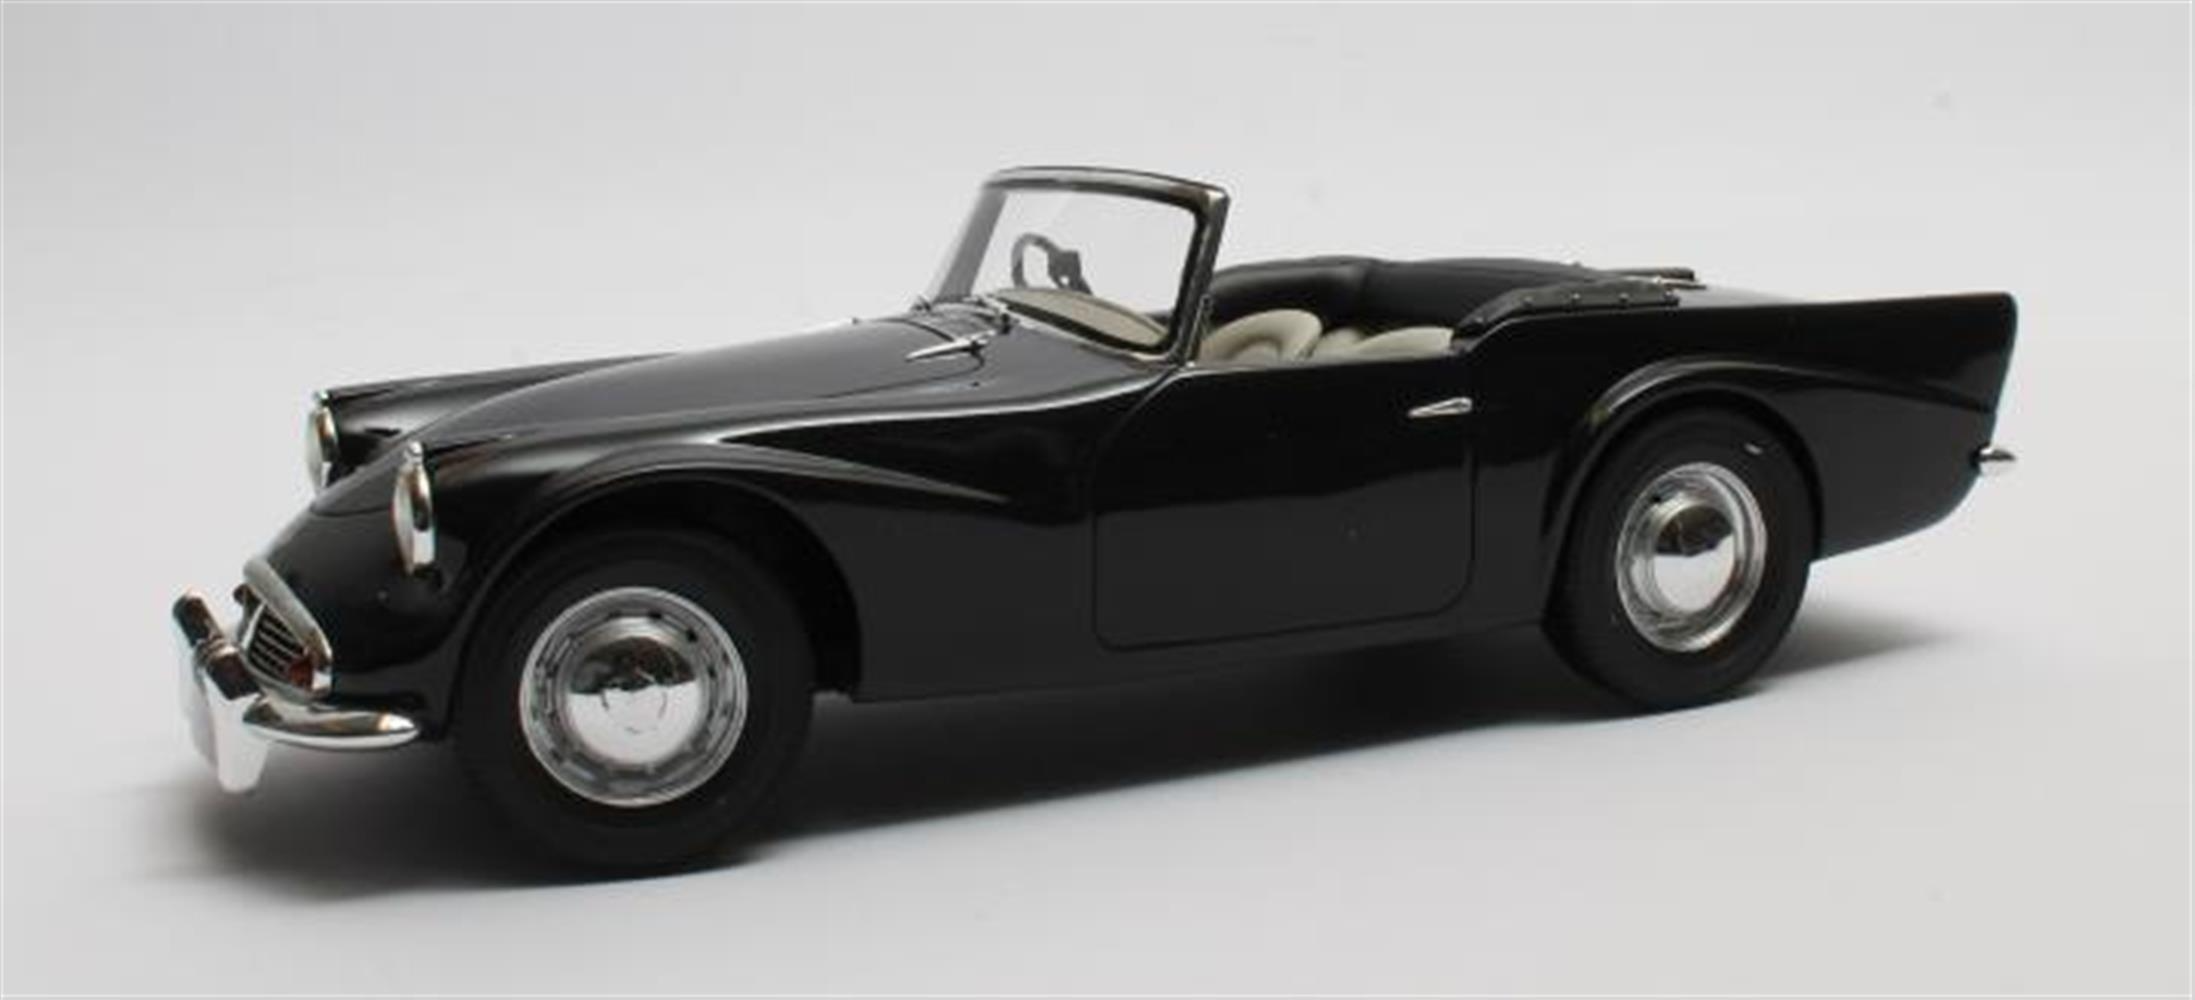 Daimler SP250 Dart black '59-'64  1:18 Cult Scale Models